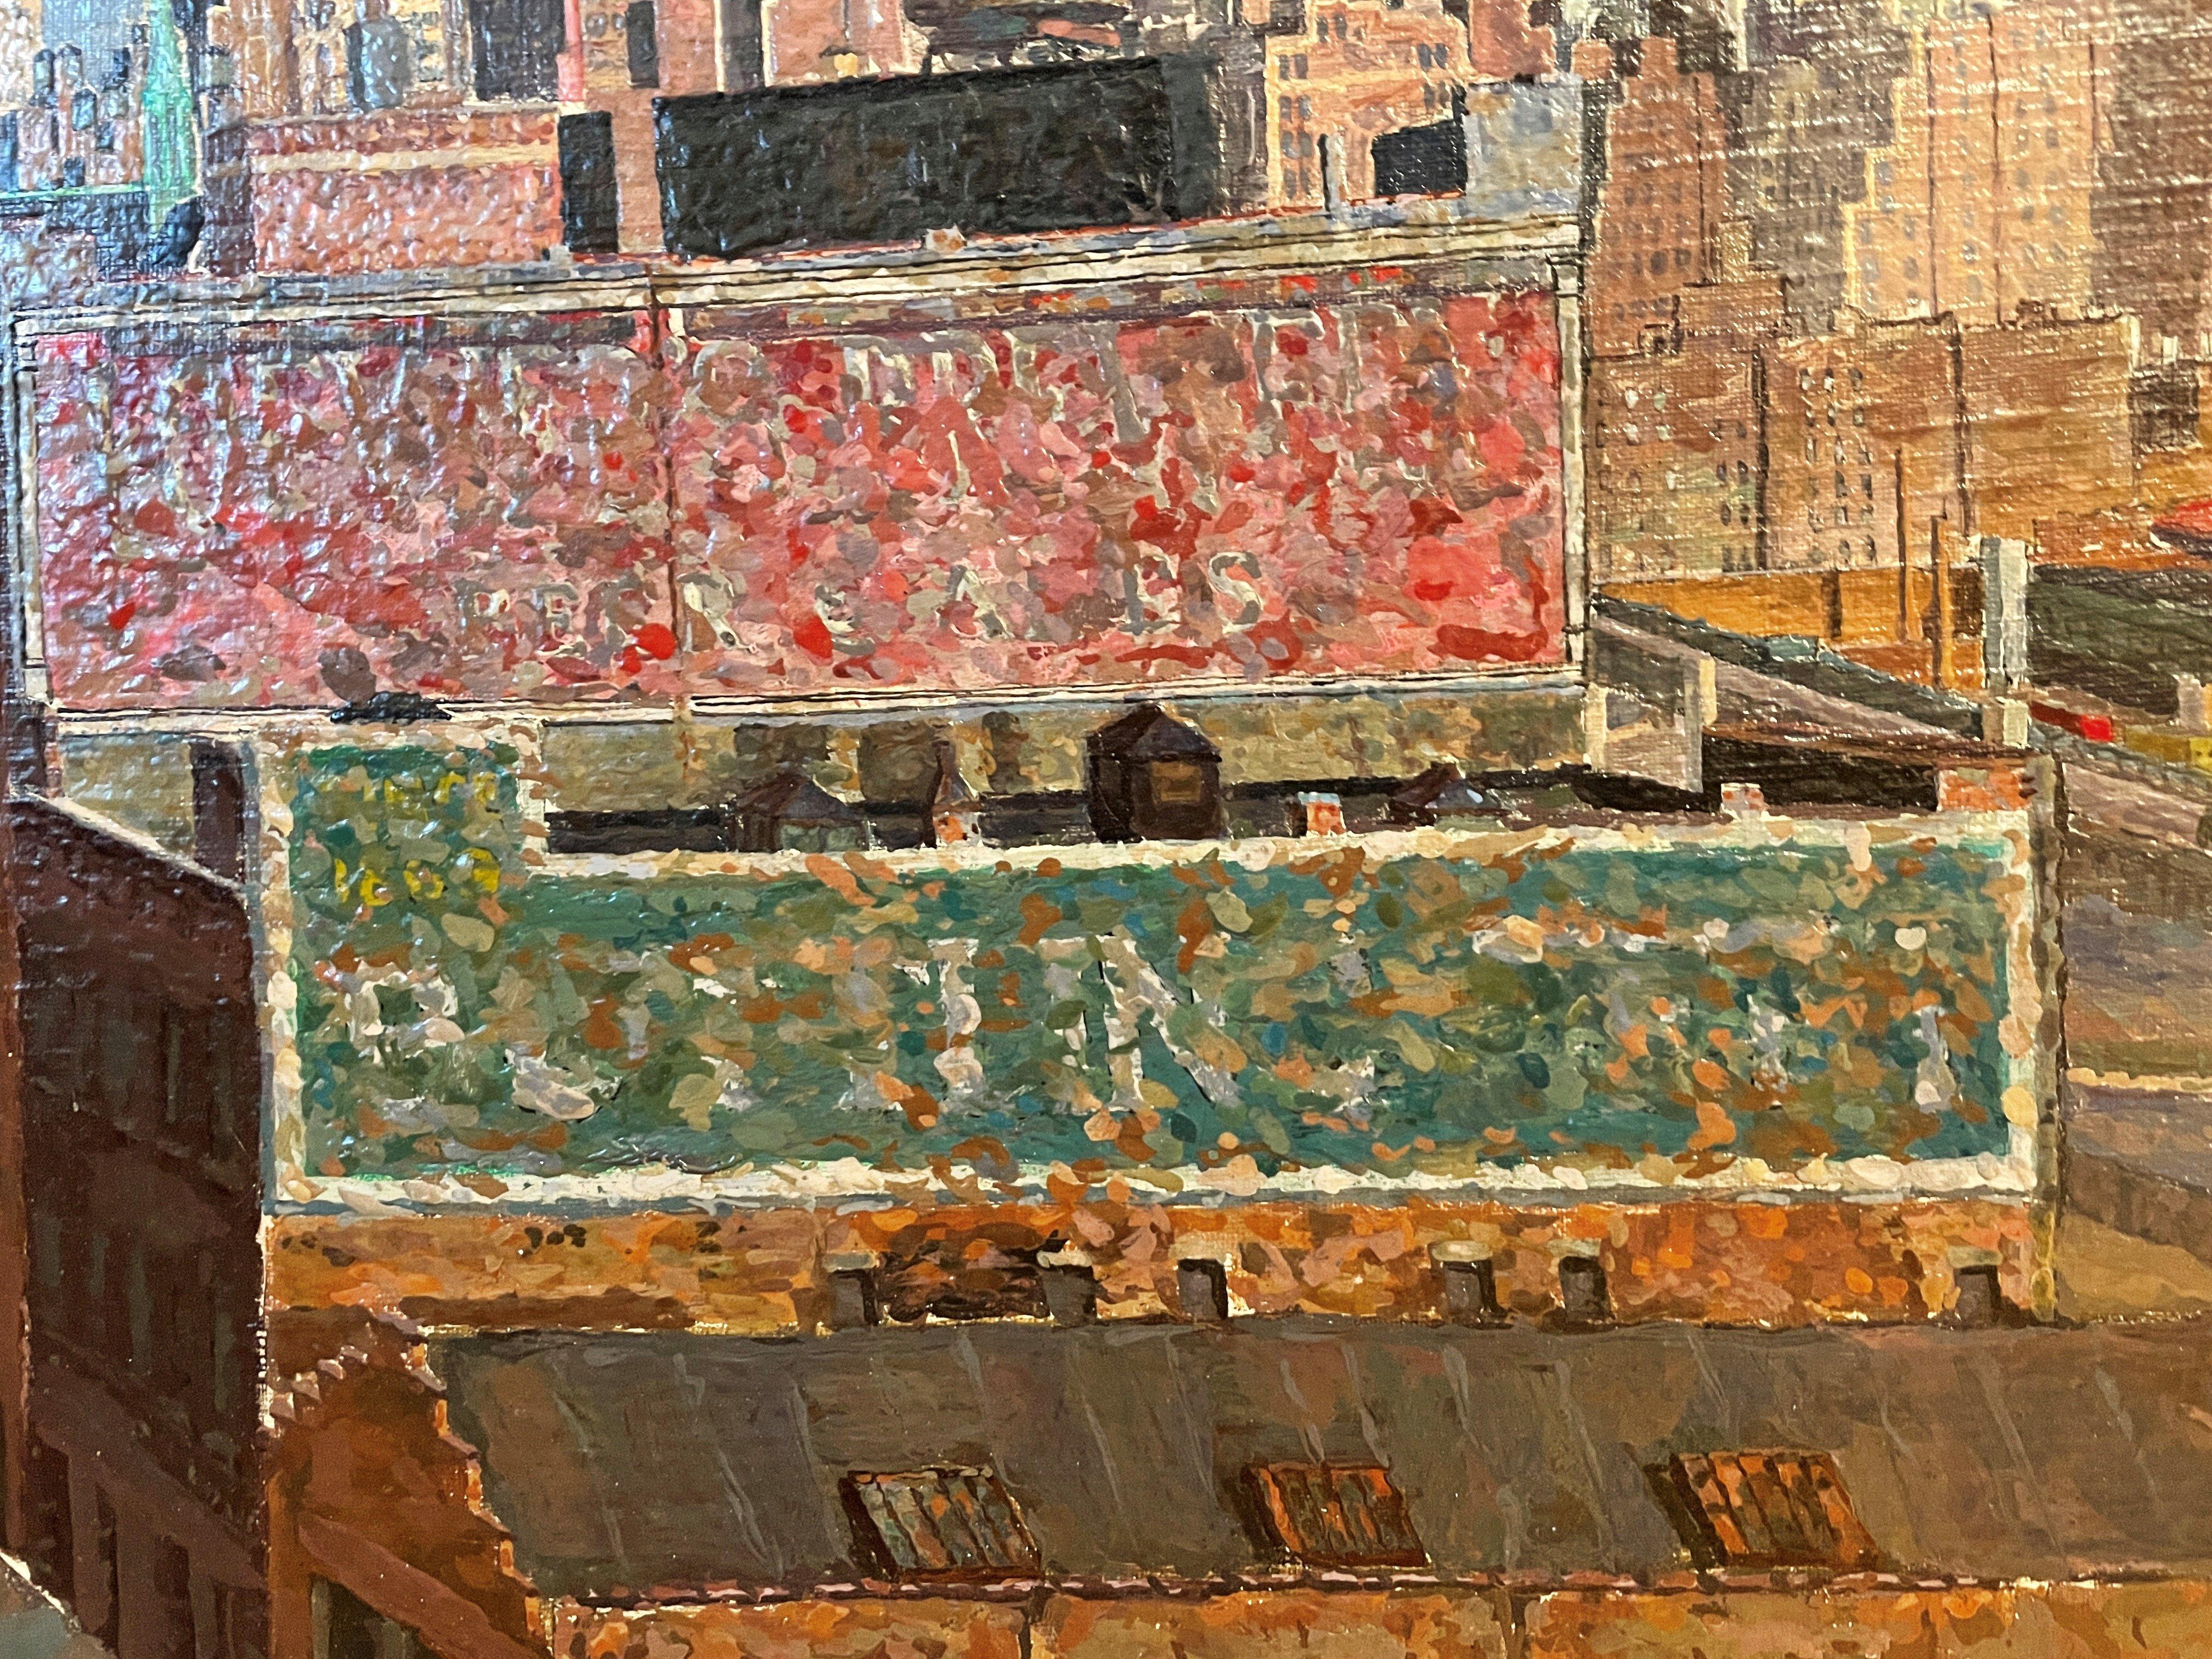 Herman Rose (1909 - 2007)
Looking East, vue de Manhattan (Voir de Midtown), 1952-54
Huile sur toile
26 x 28 pouces (68 x 71 cm)
Signé en bas à droite

Fairfield Porter a écrit un essai dans ArtNews sur cette peinture exacte en 1955. Veuillez vous